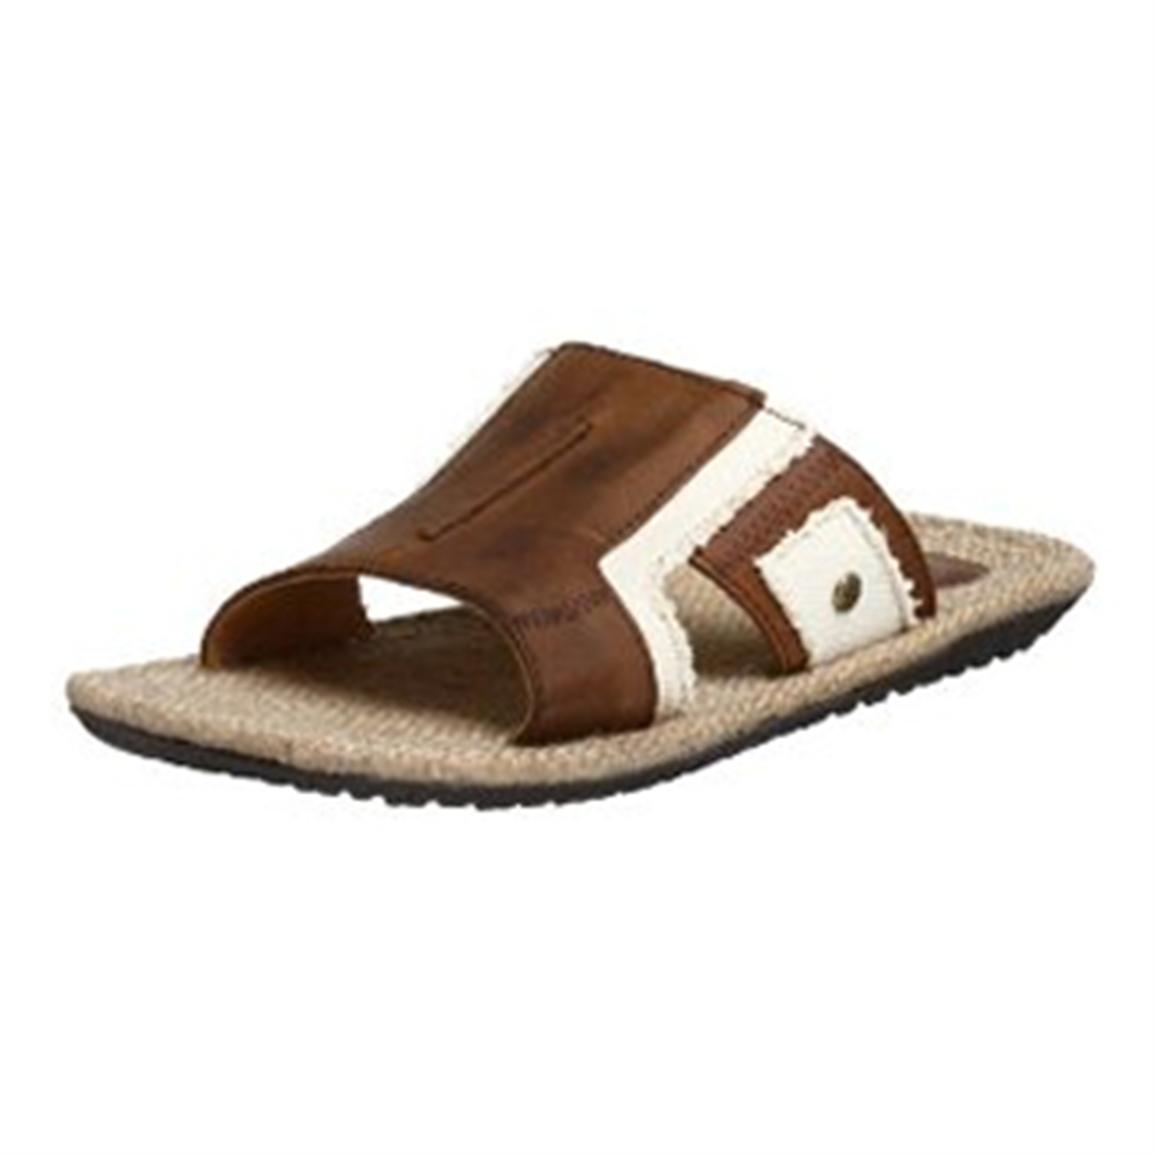 Men's Maui Surf® South Beach Sandals 183255, Sandals at